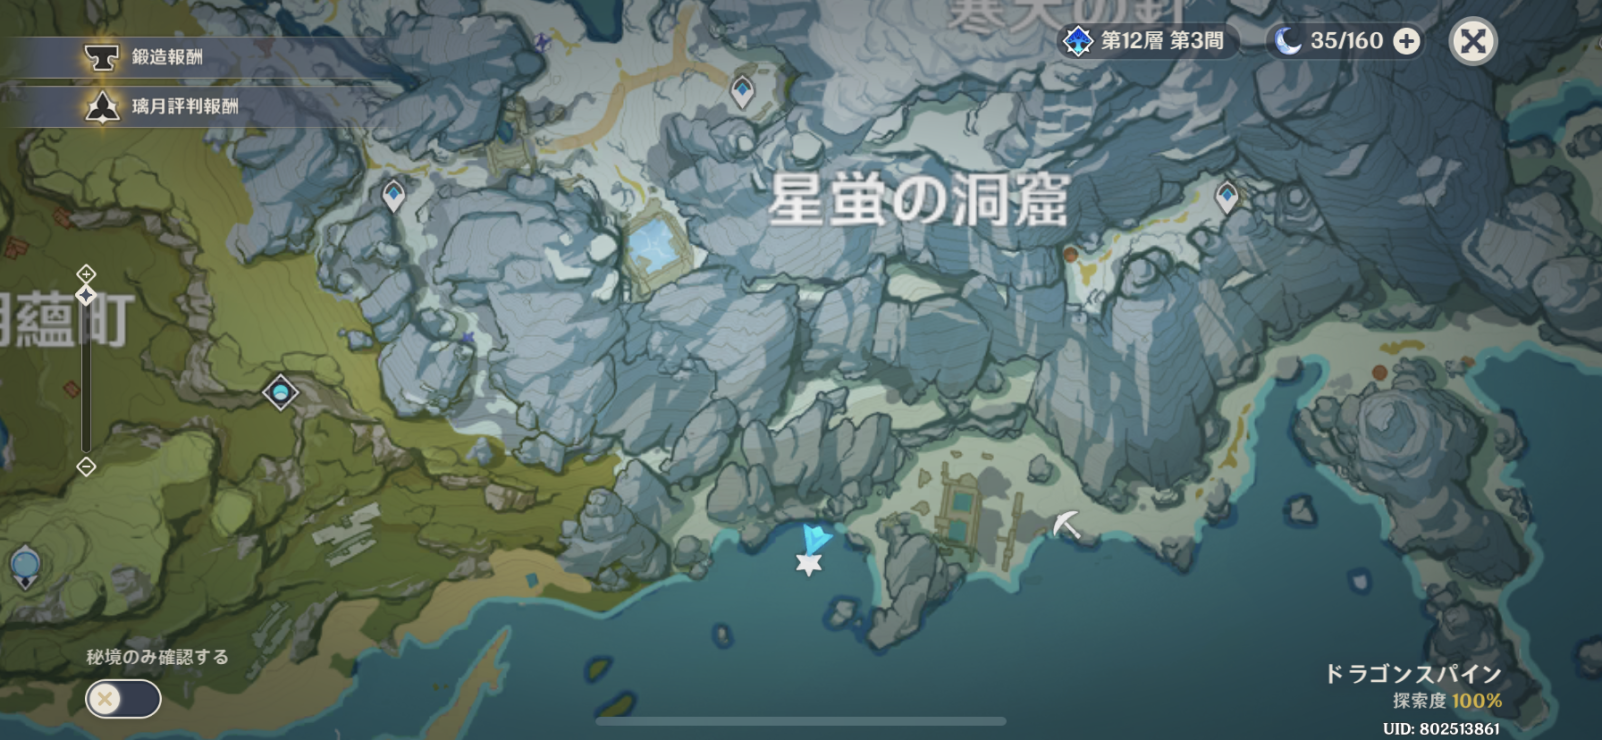 ドラゴンスパイン実装当初から分からなかった場所 Genshin Impact Official Community